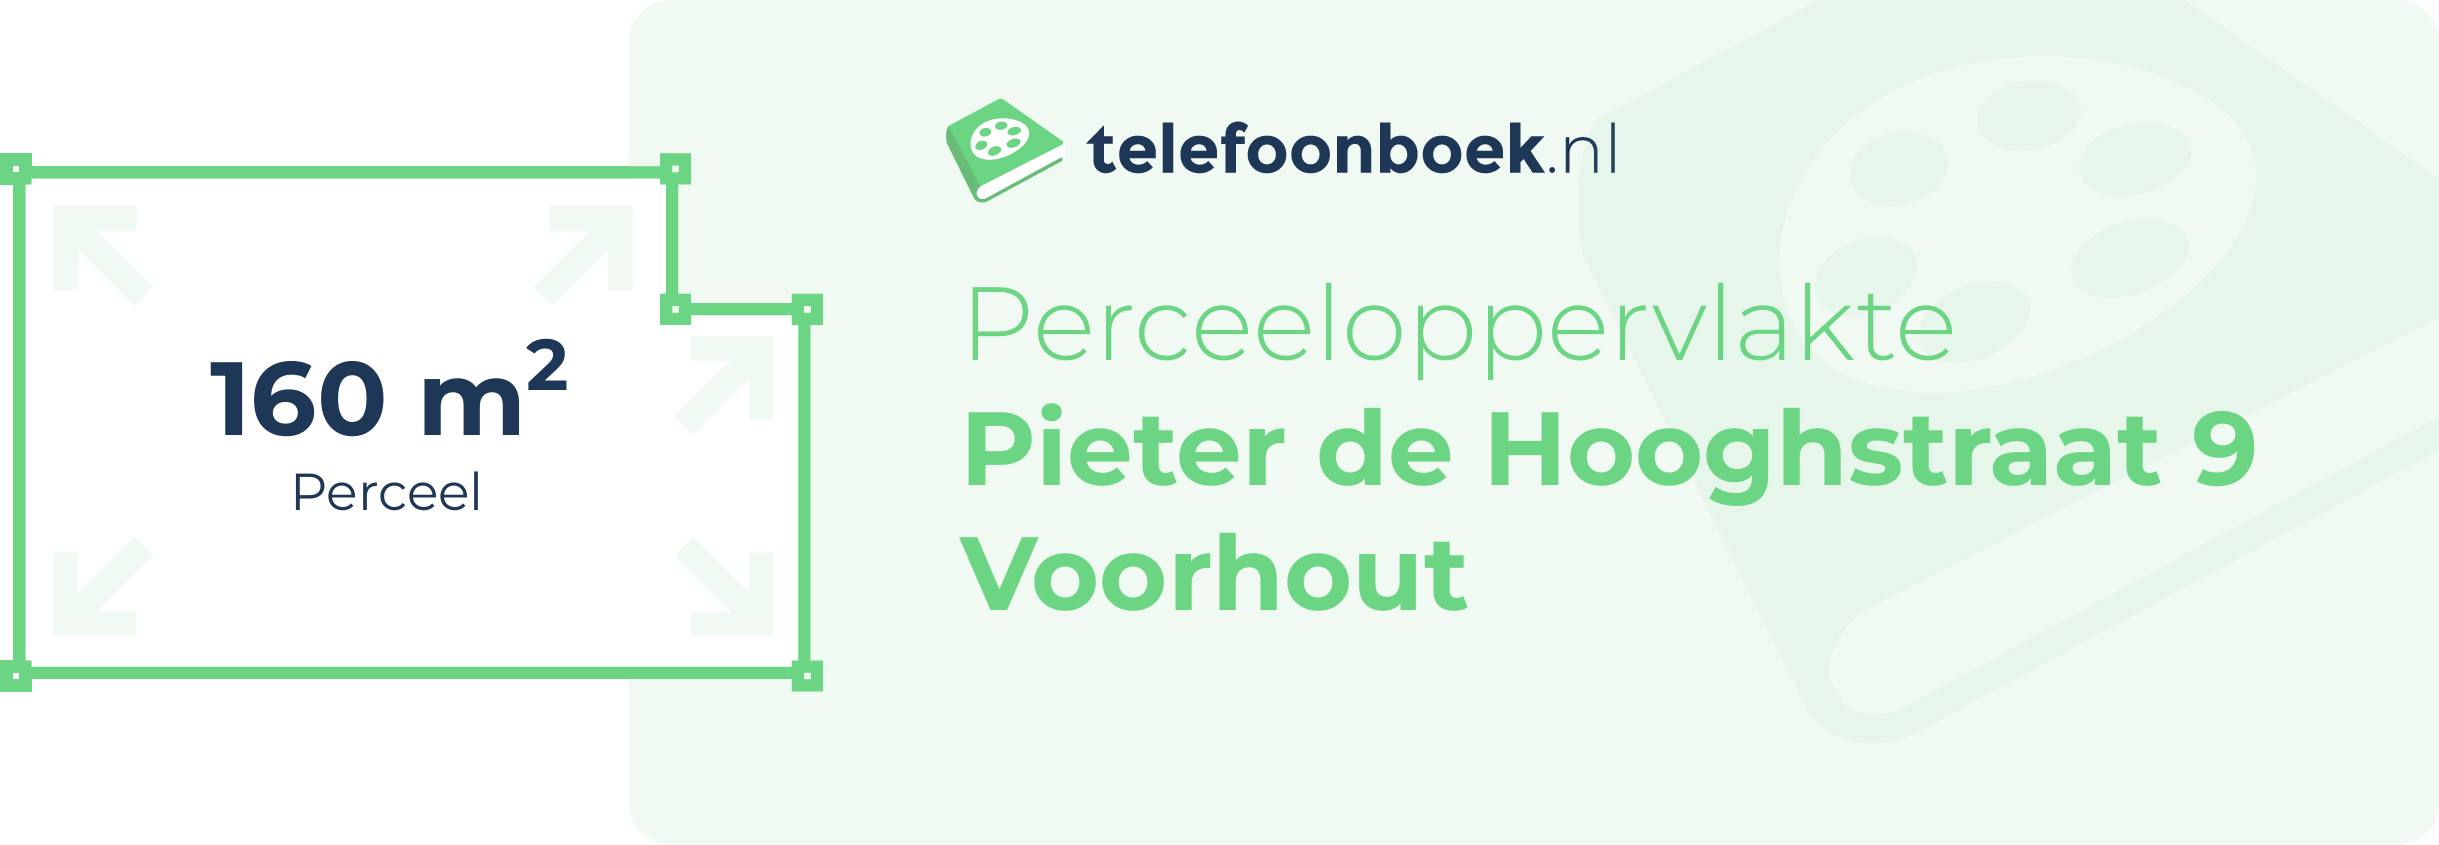 Perceeloppervlakte Pieter De Hooghstraat 9 Voorhout